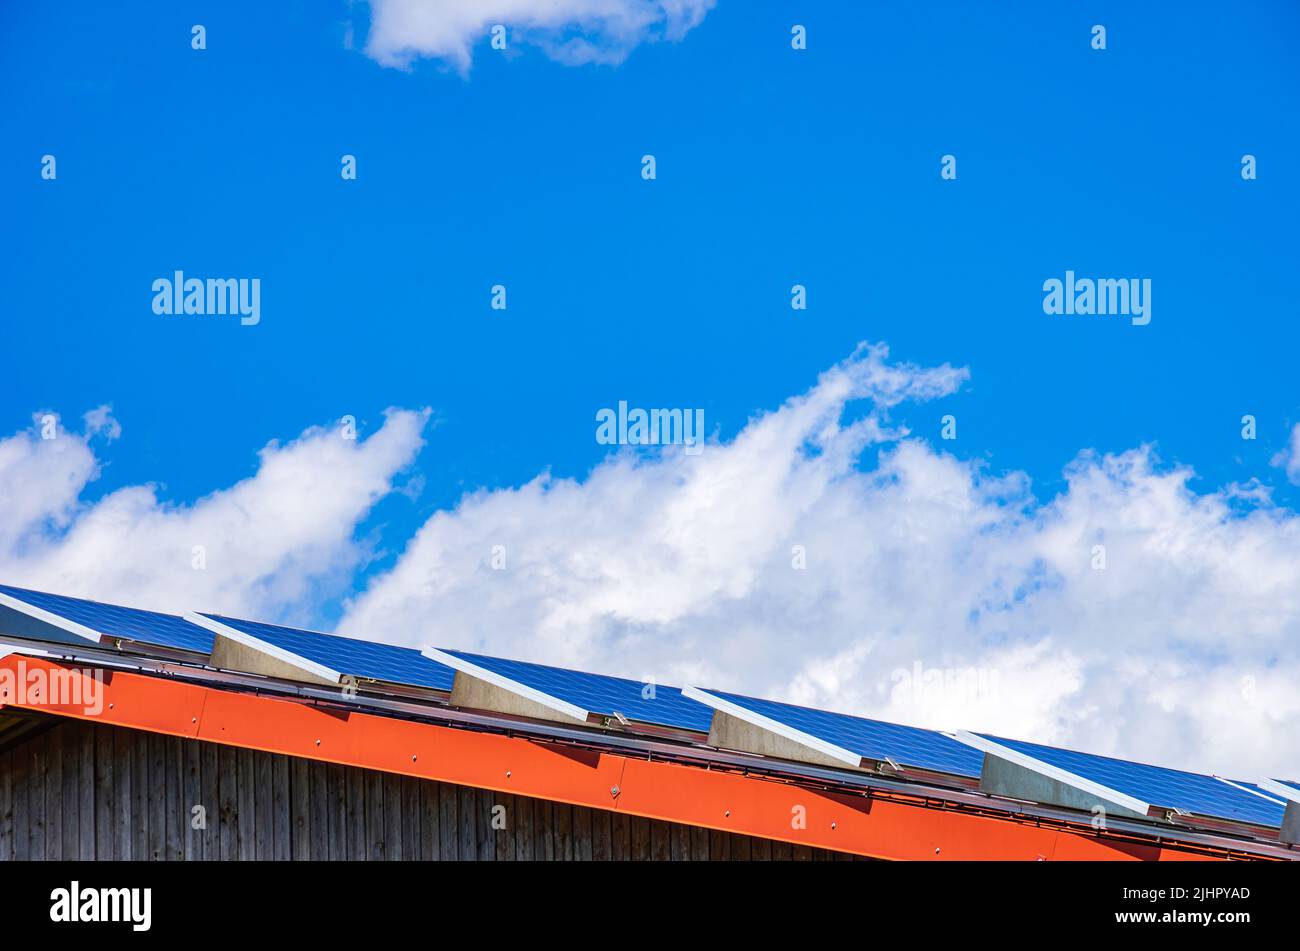 Sistema fotovoltaico doméstico o pequeña planta de energía solar en el techo de una casa. Foto de stock